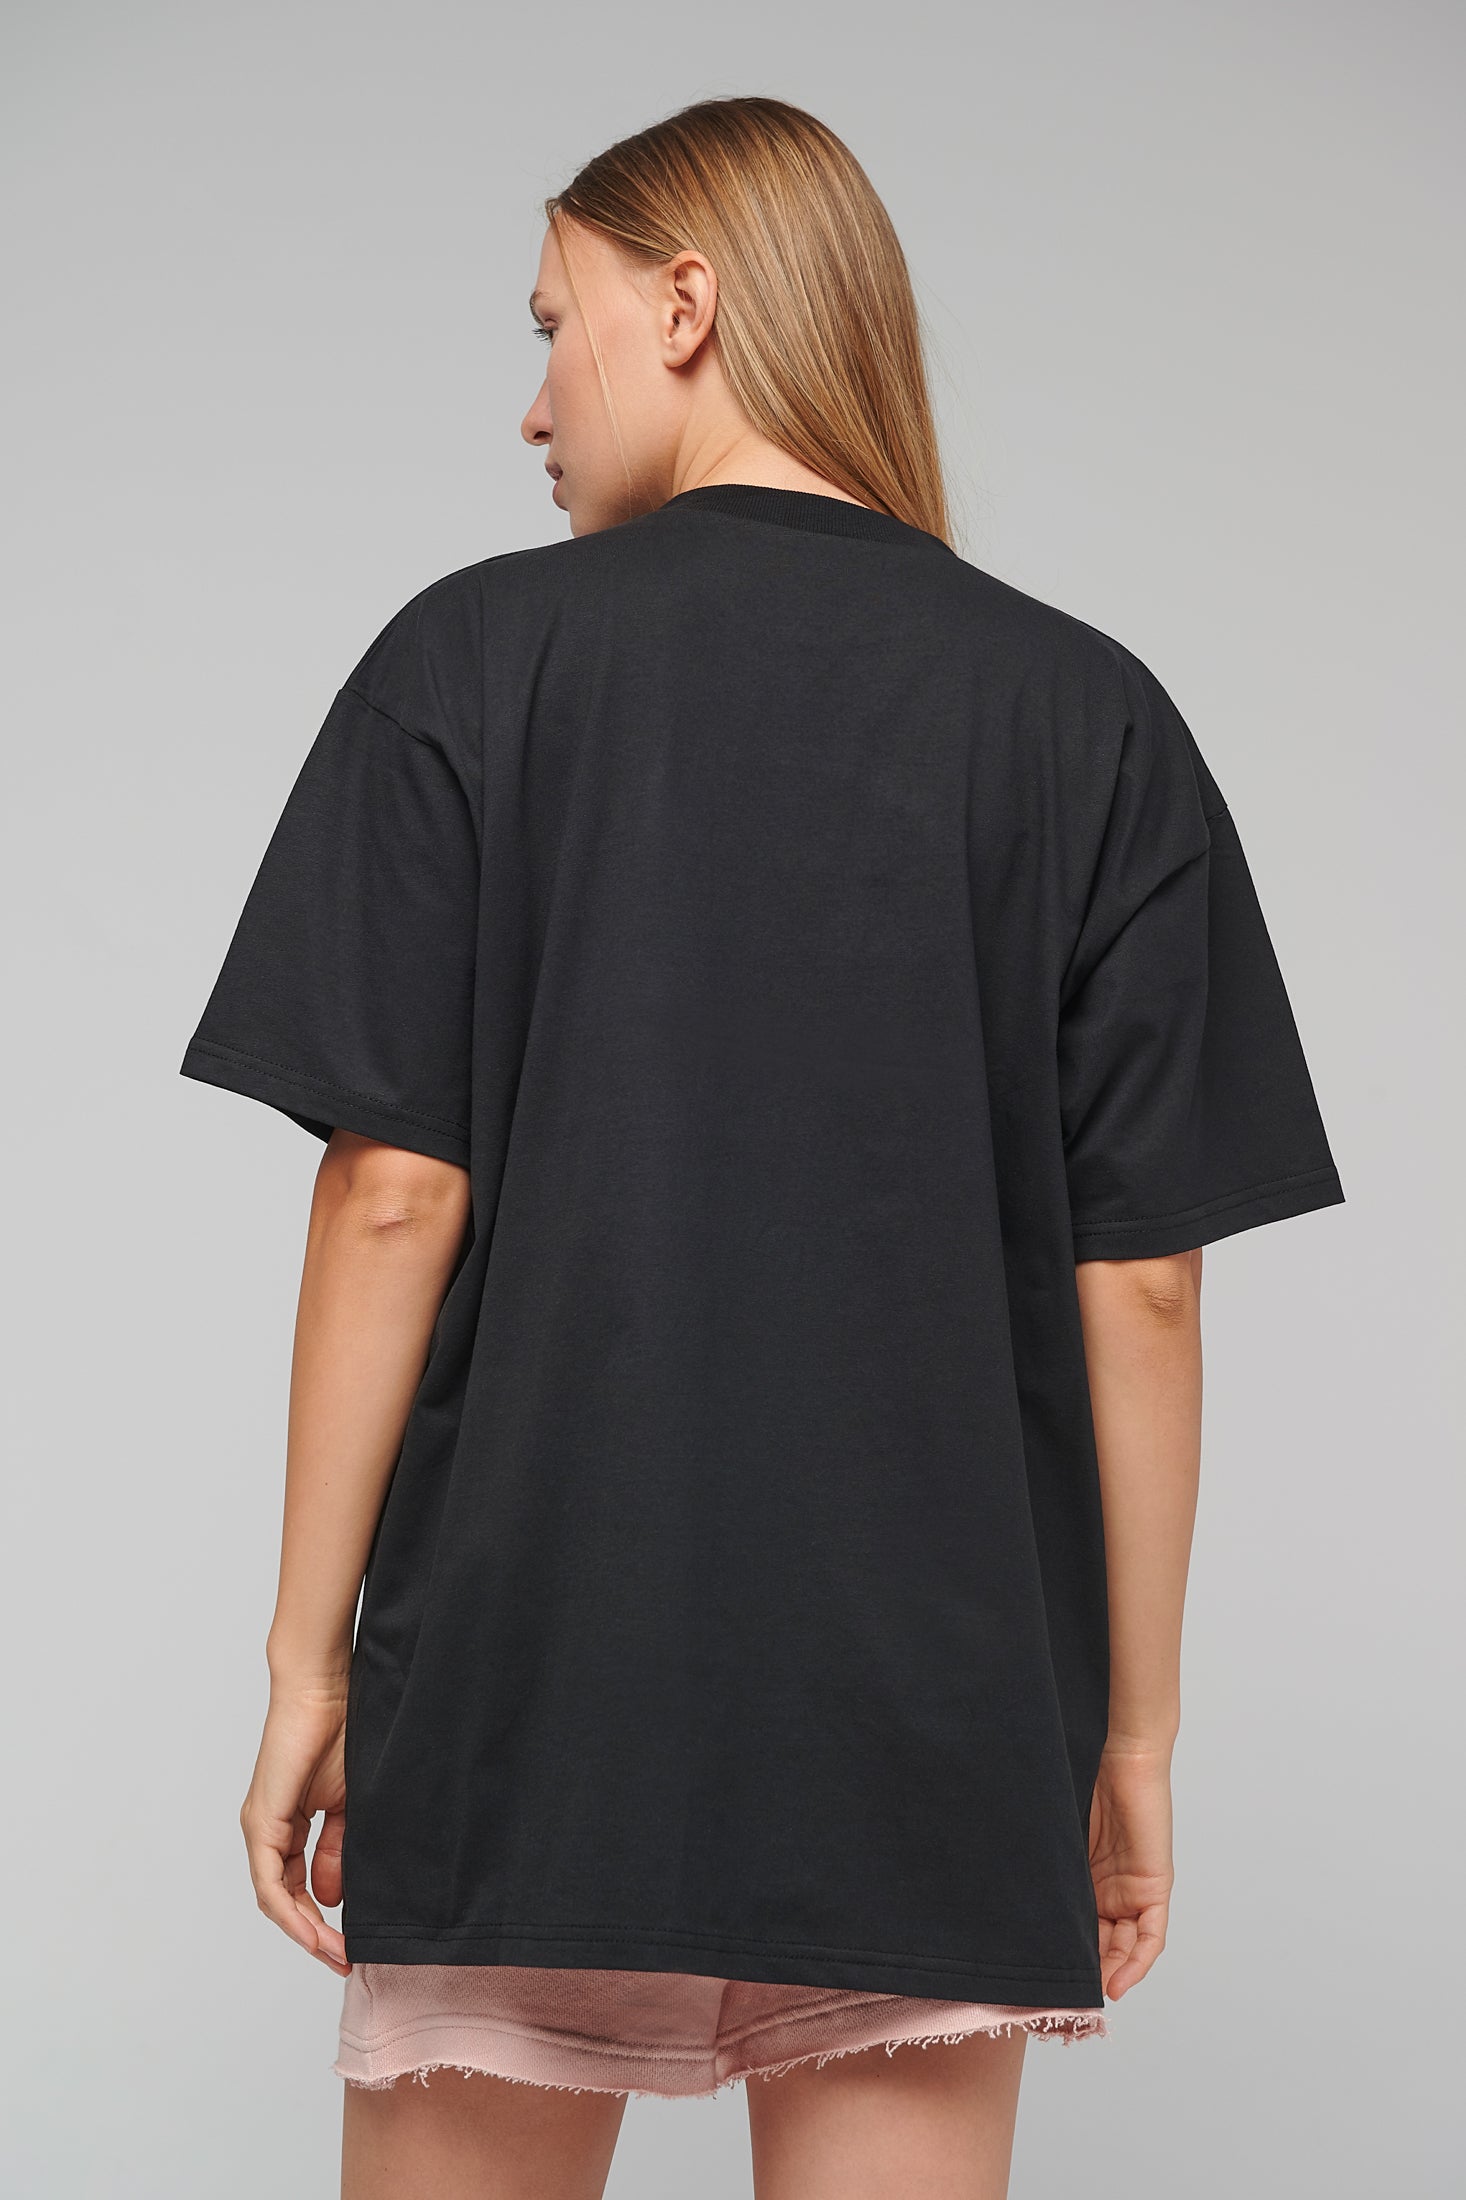 Theta Goes Magenta Unisex One size T-shirt